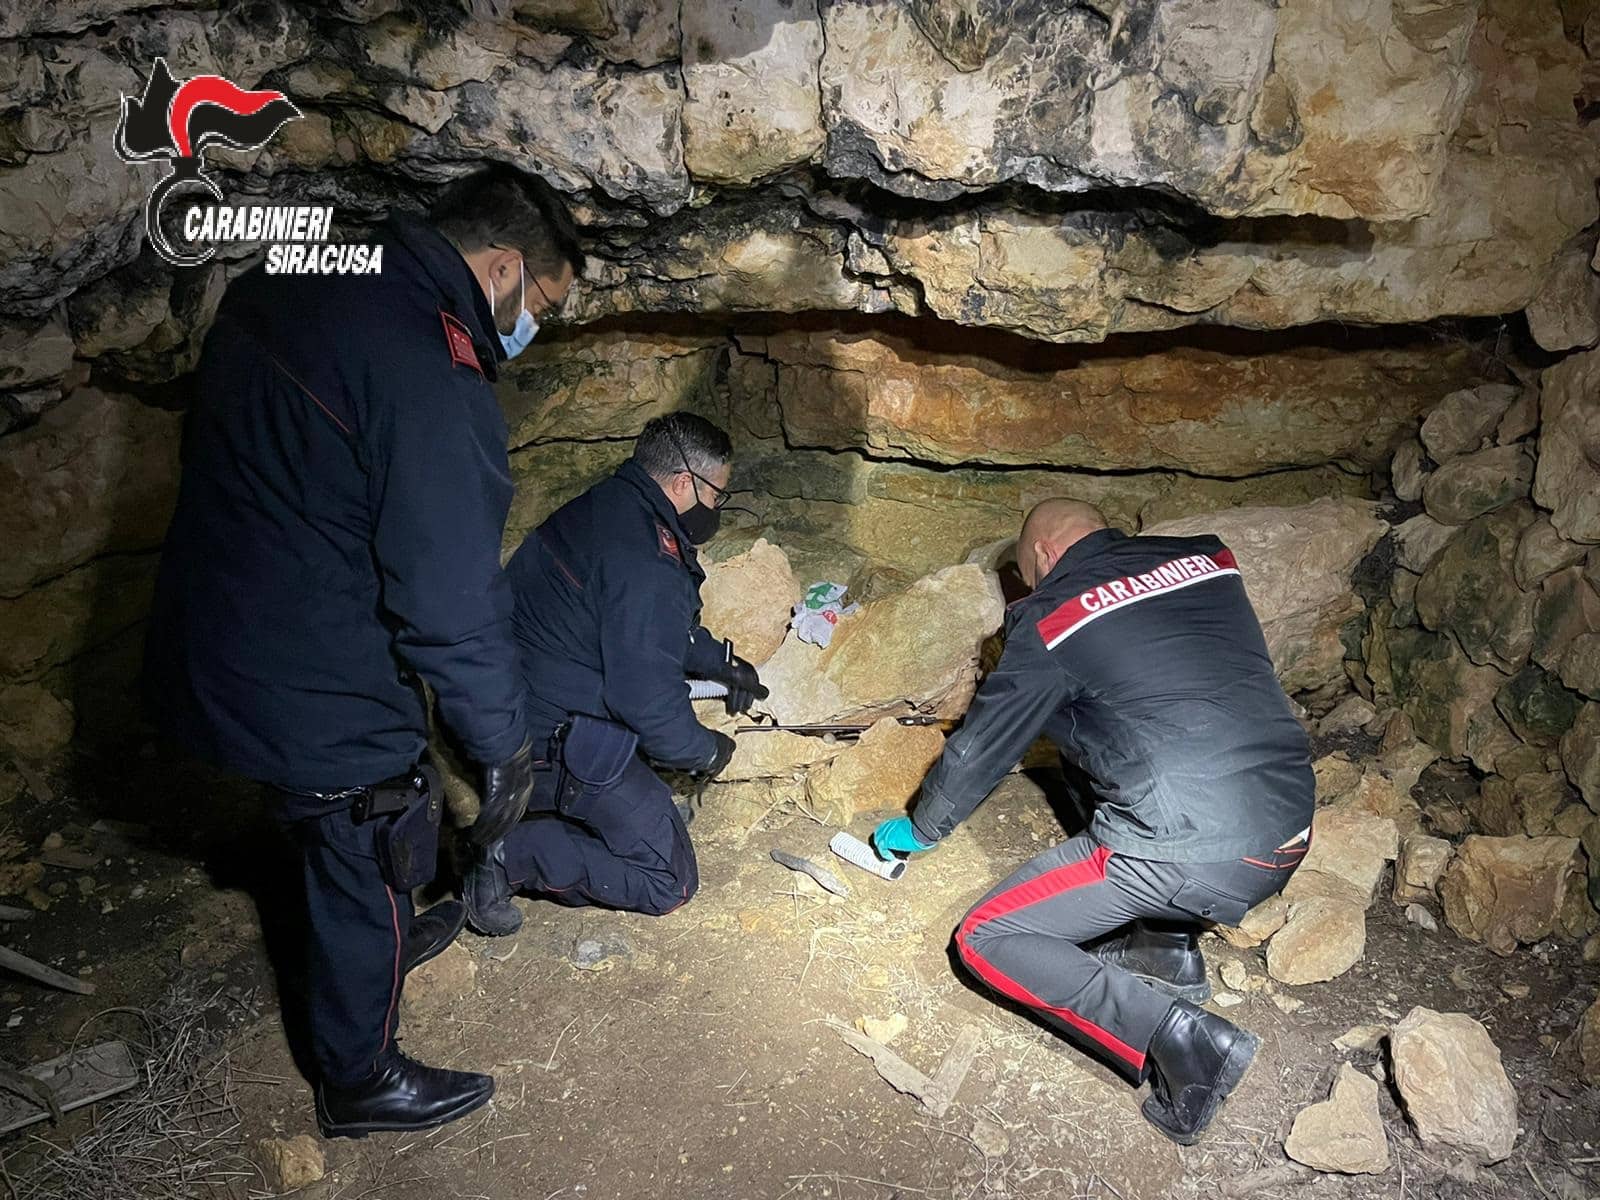 Droga, armi e munizioni nascoste in una grotta, ritrovamento “stupefacente” dei carabinieri